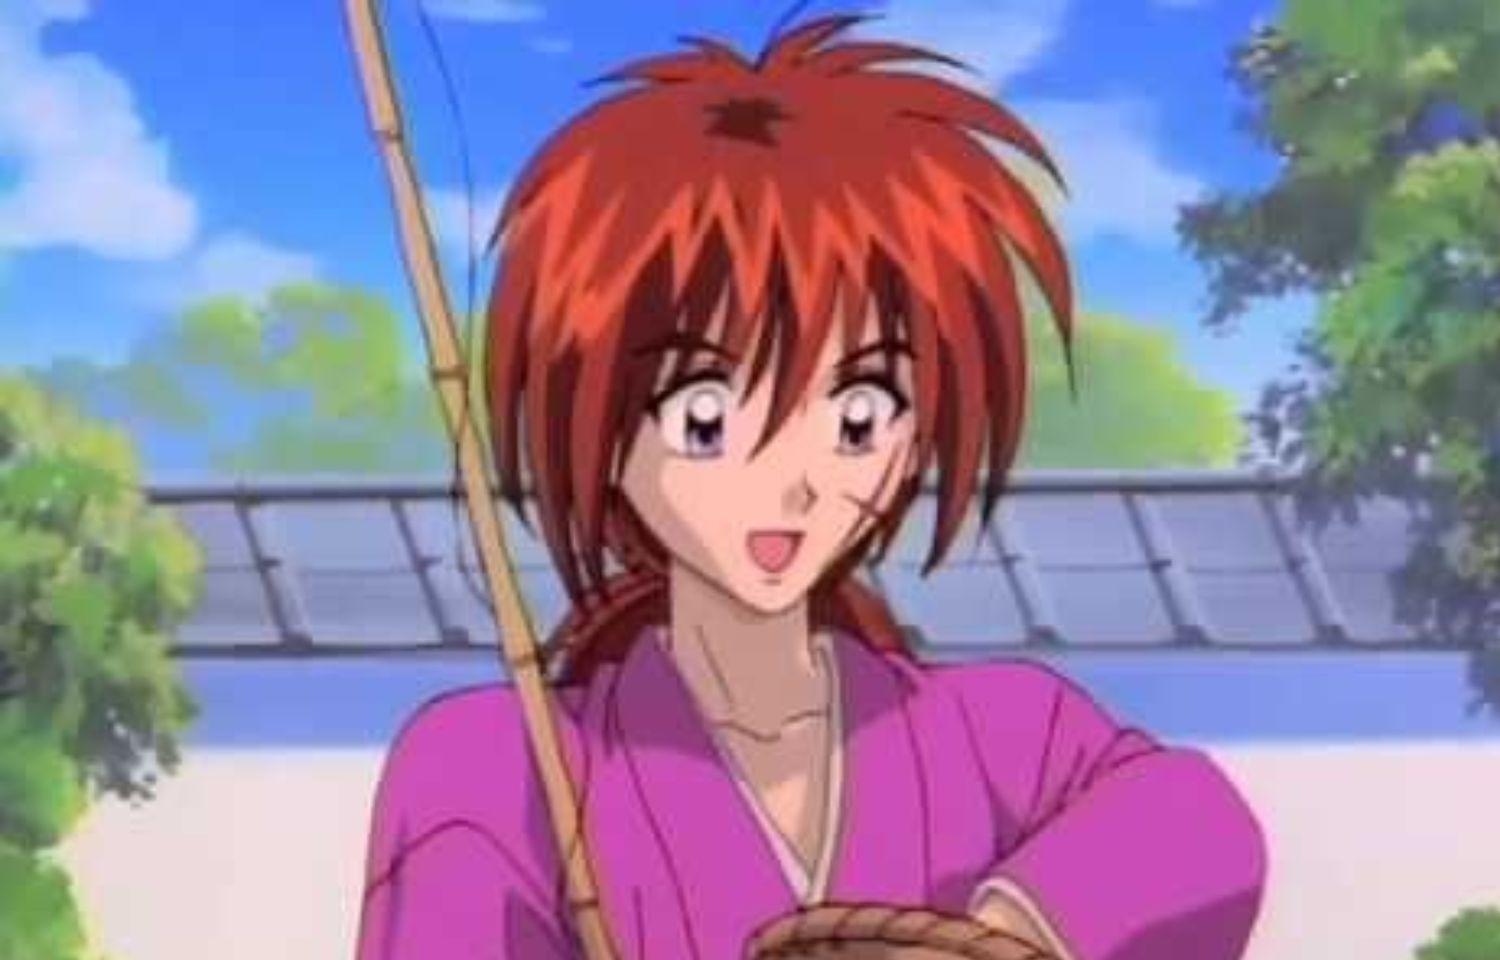 Rurouni Kenshin Episode 19 Release Date